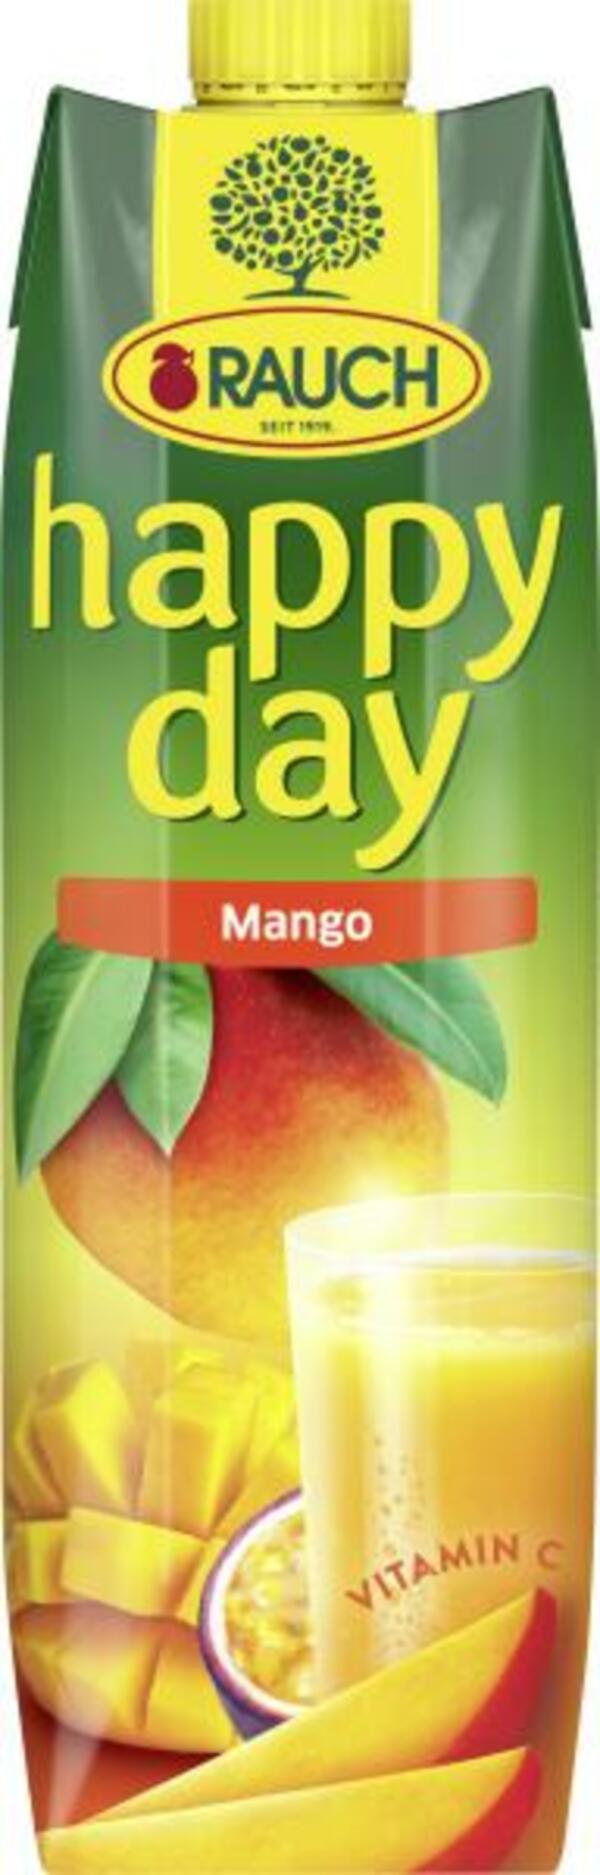 Bild 1 von Rauch Happy Day Mango